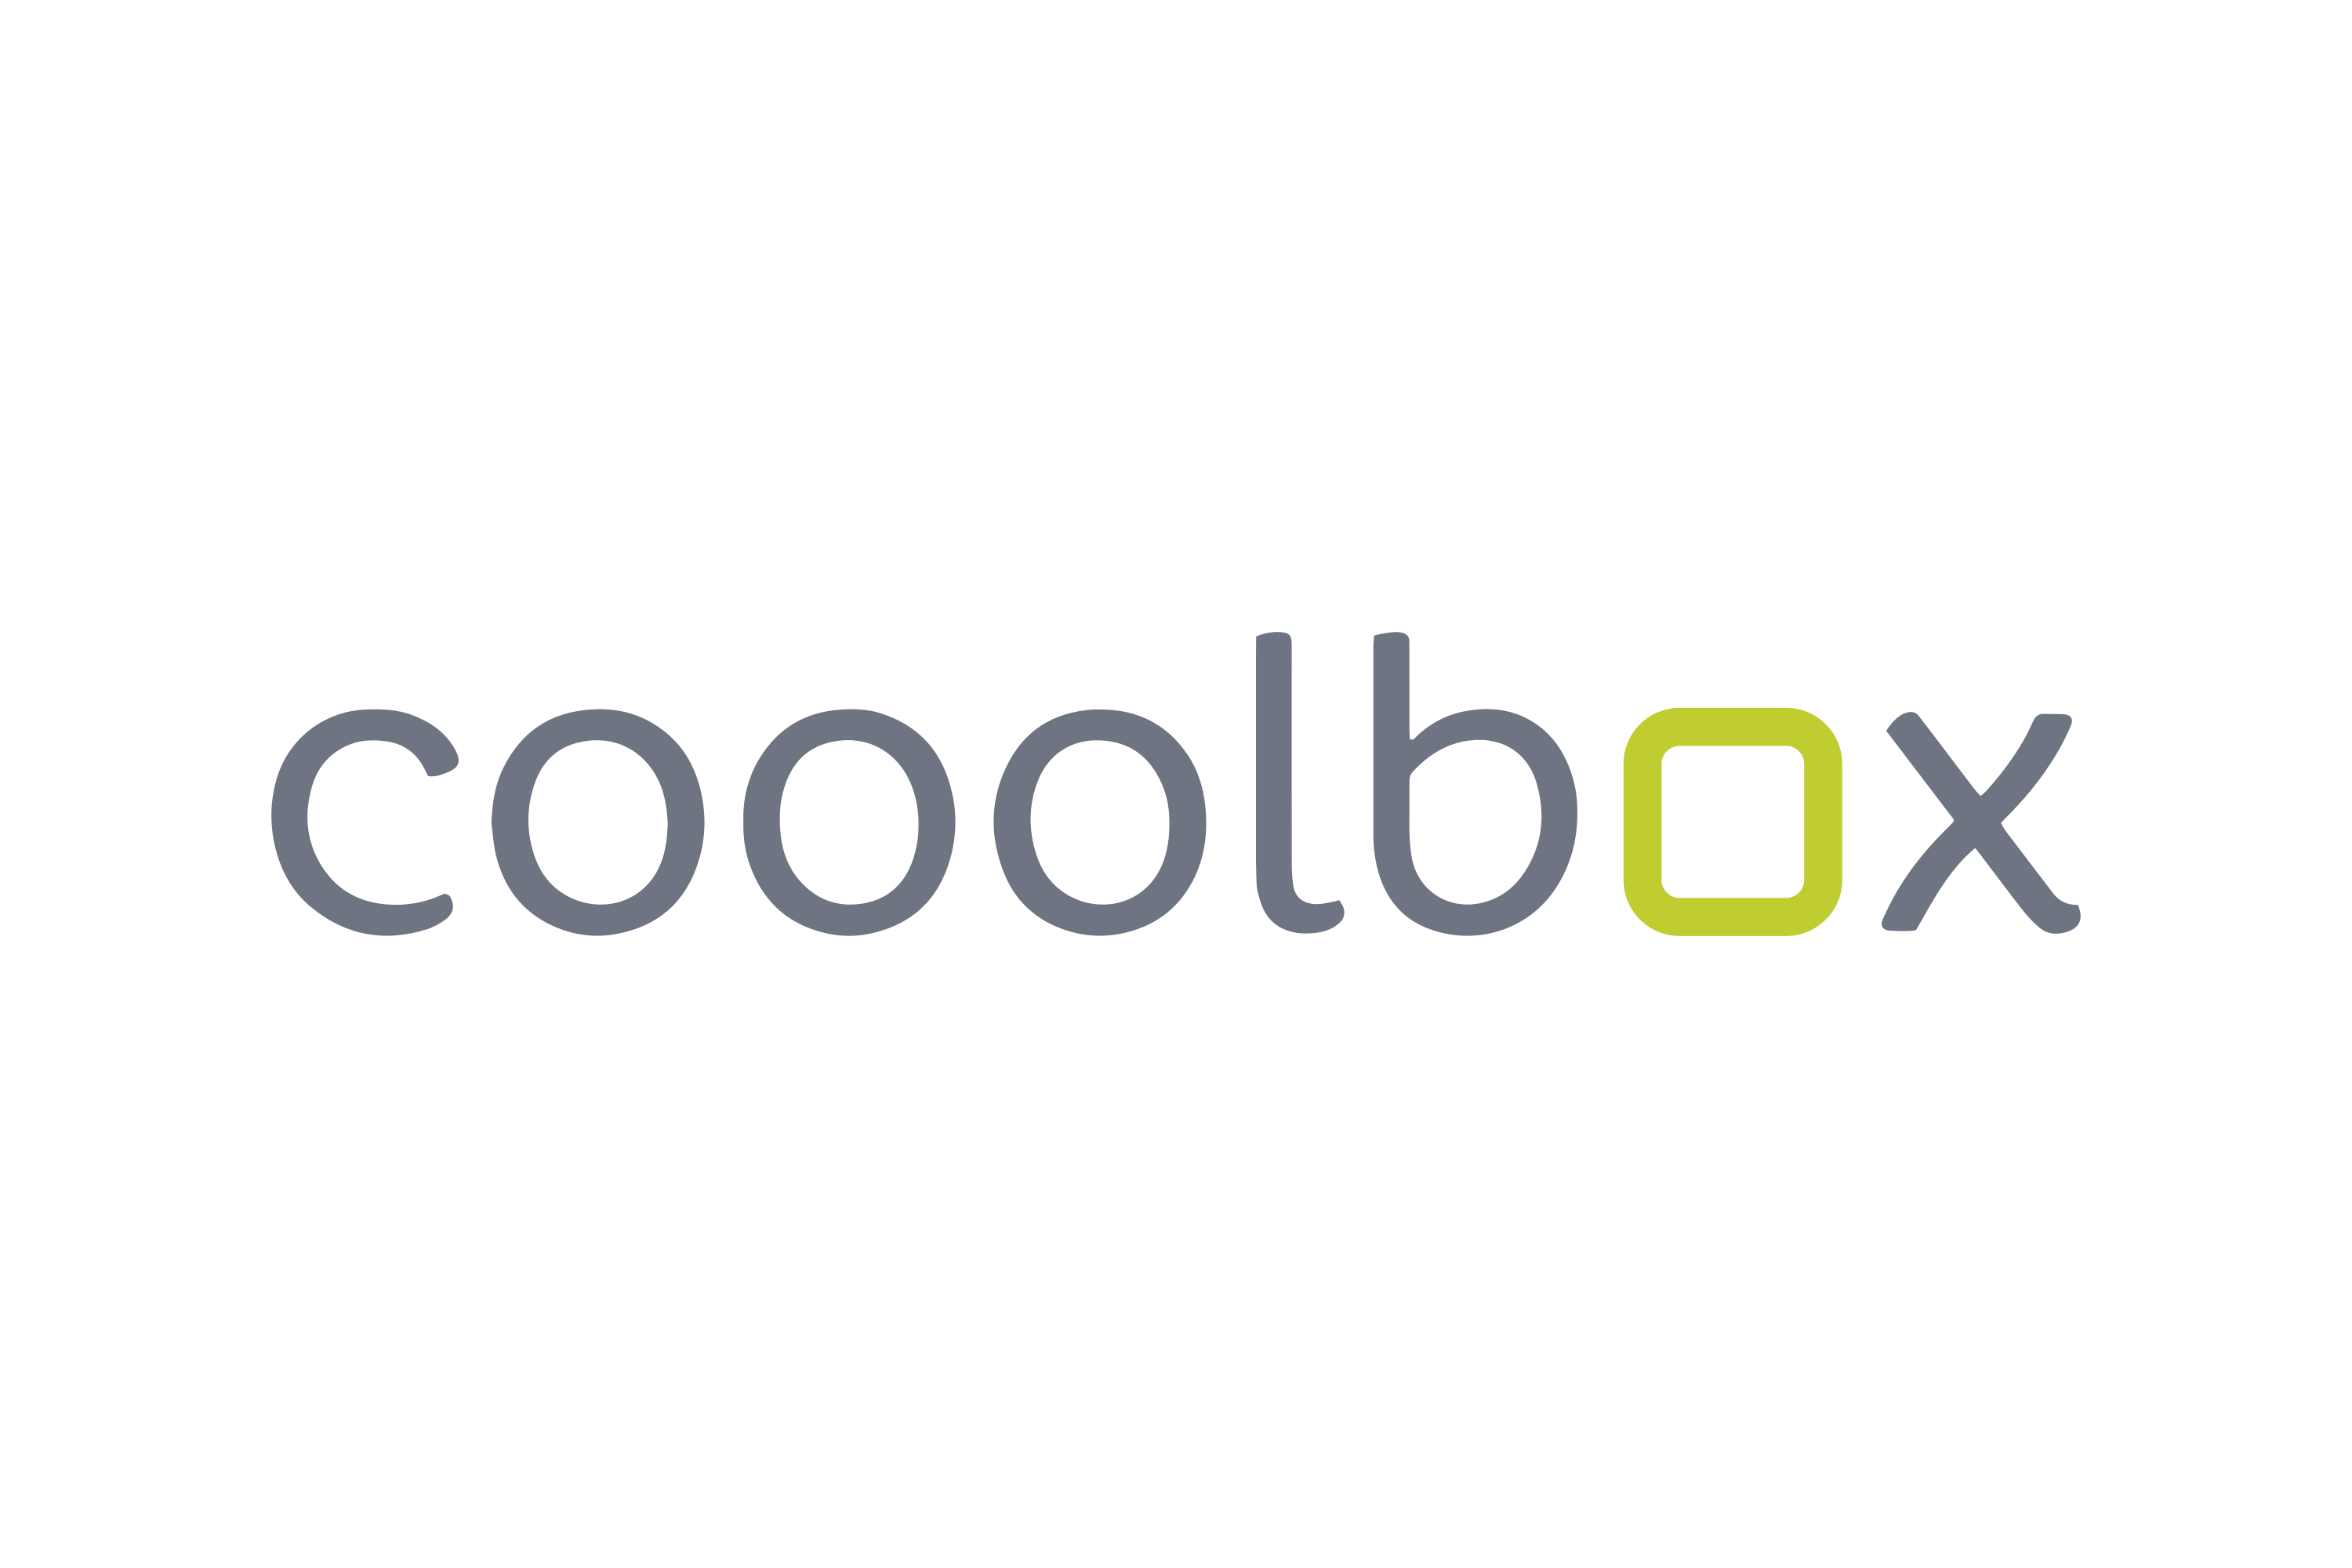 Logo: Cooolbox